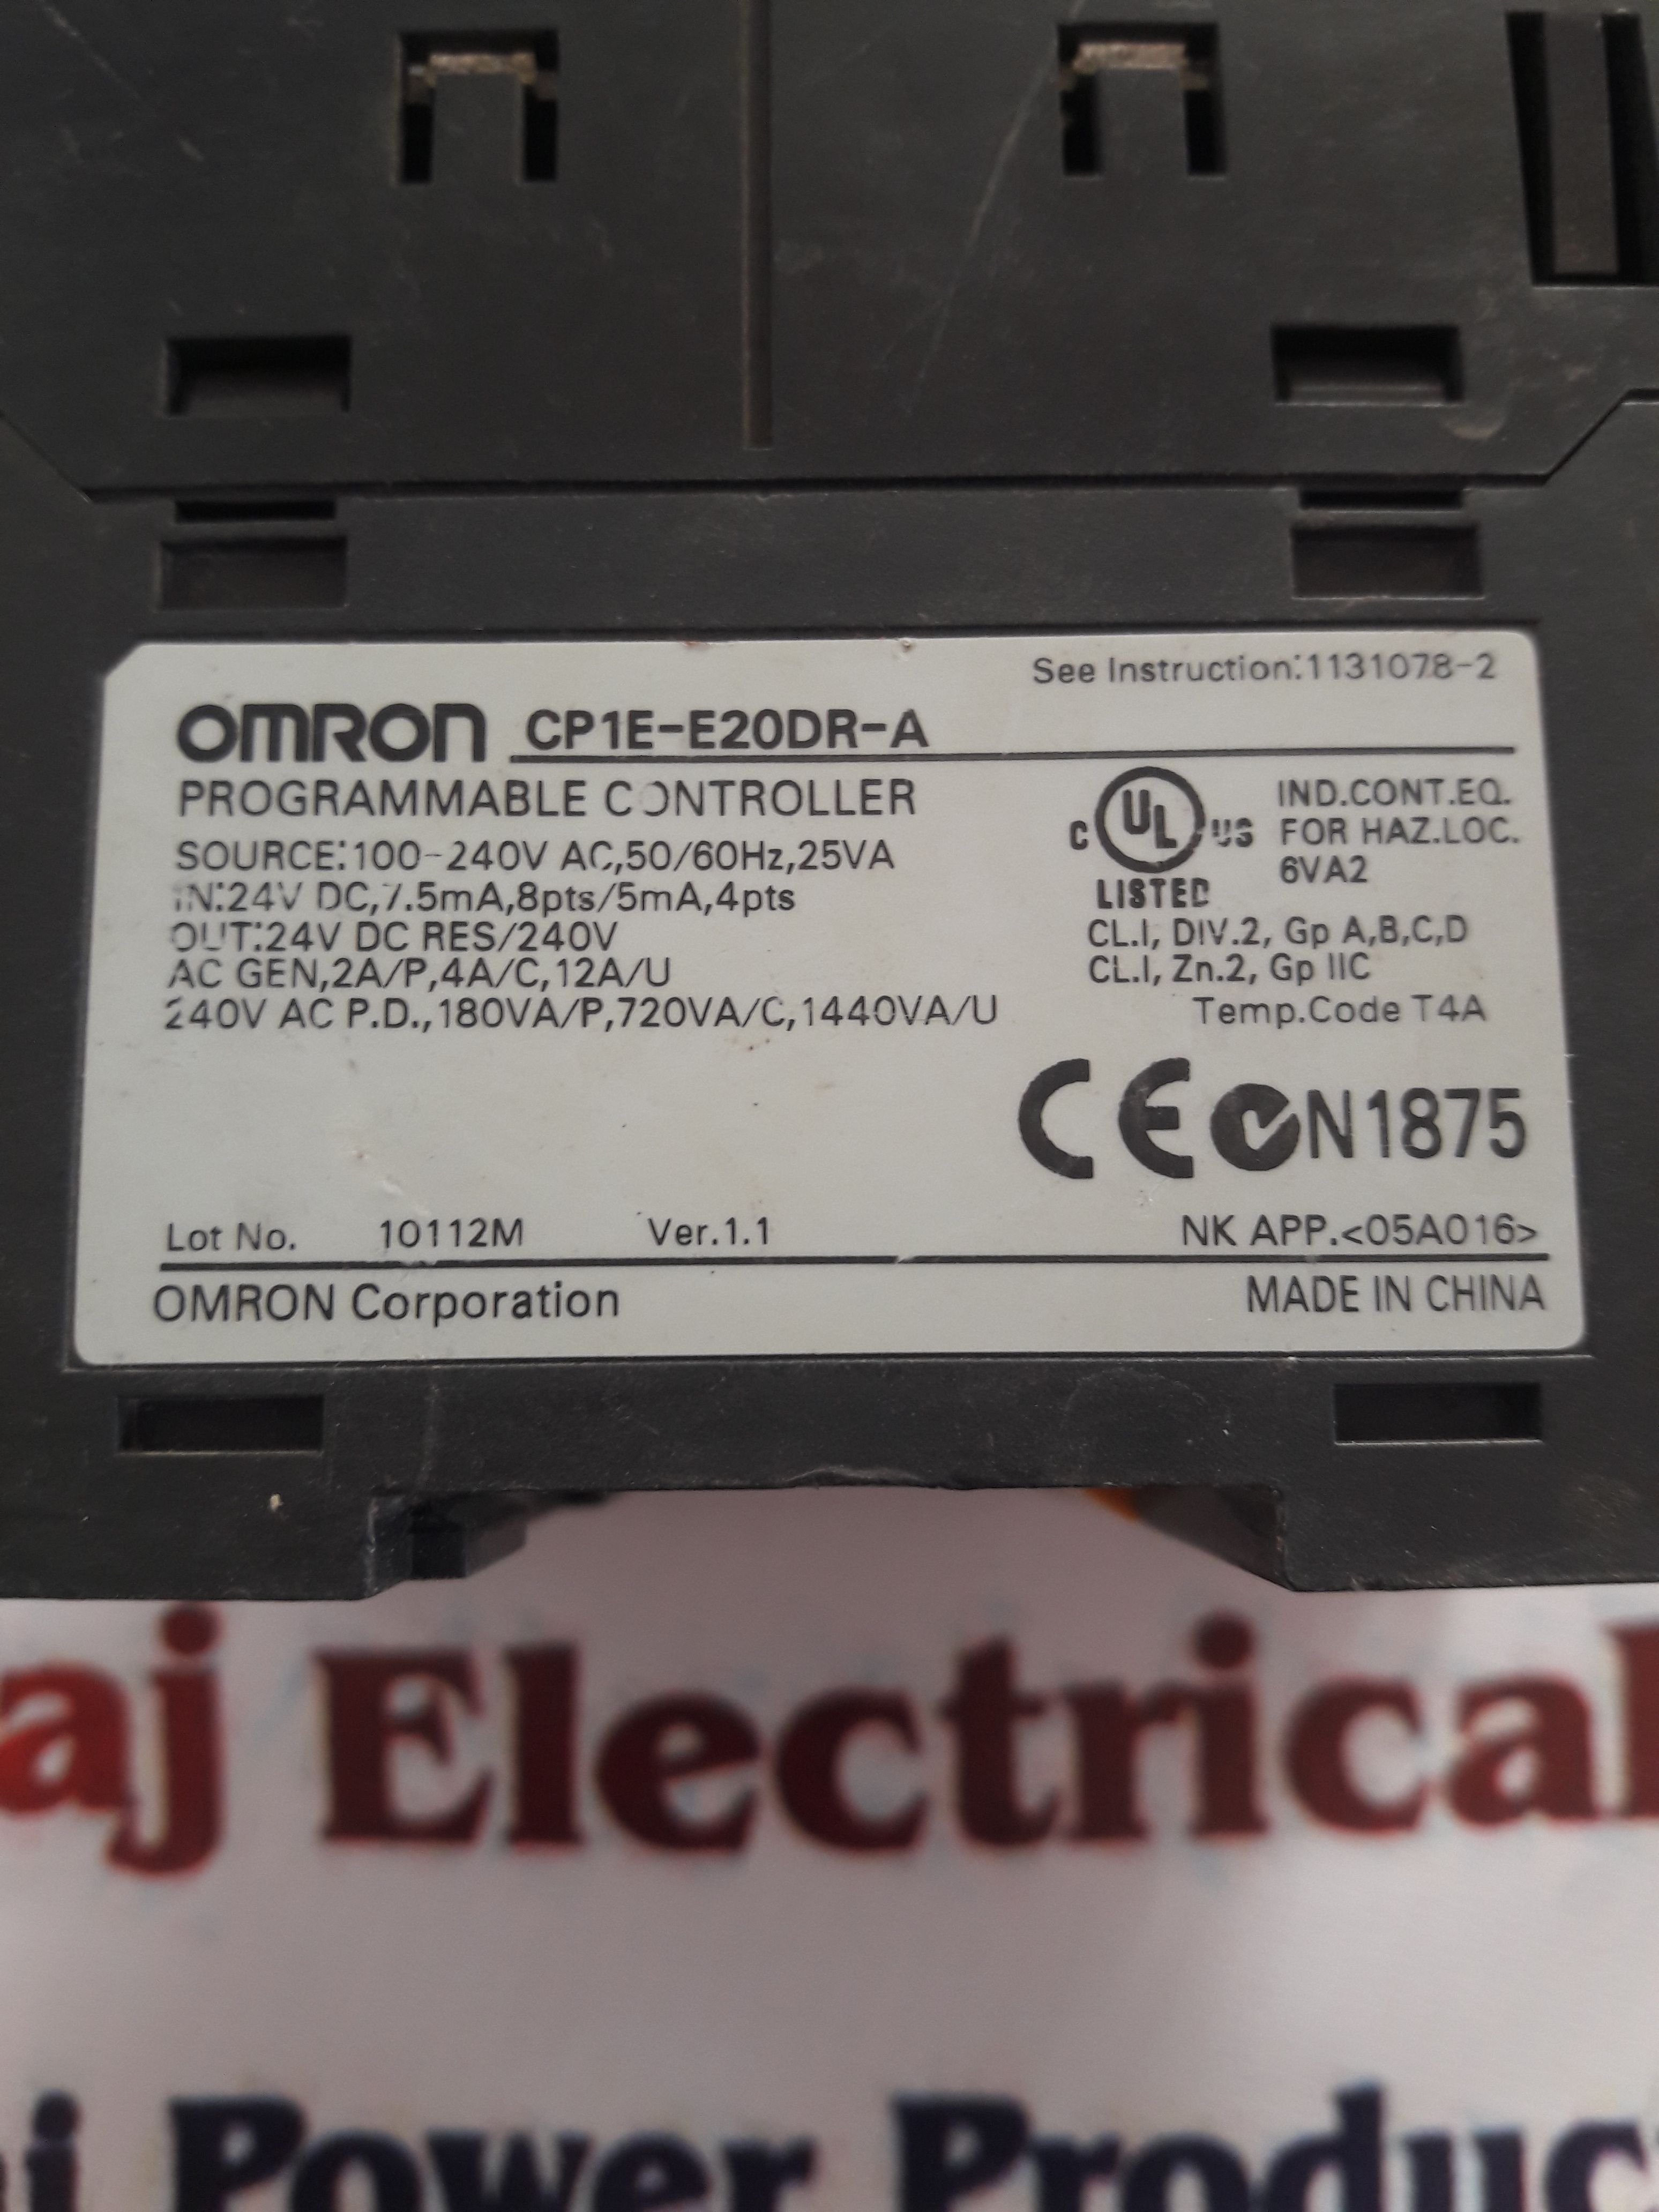 OMRON CP1E-E20DR-A